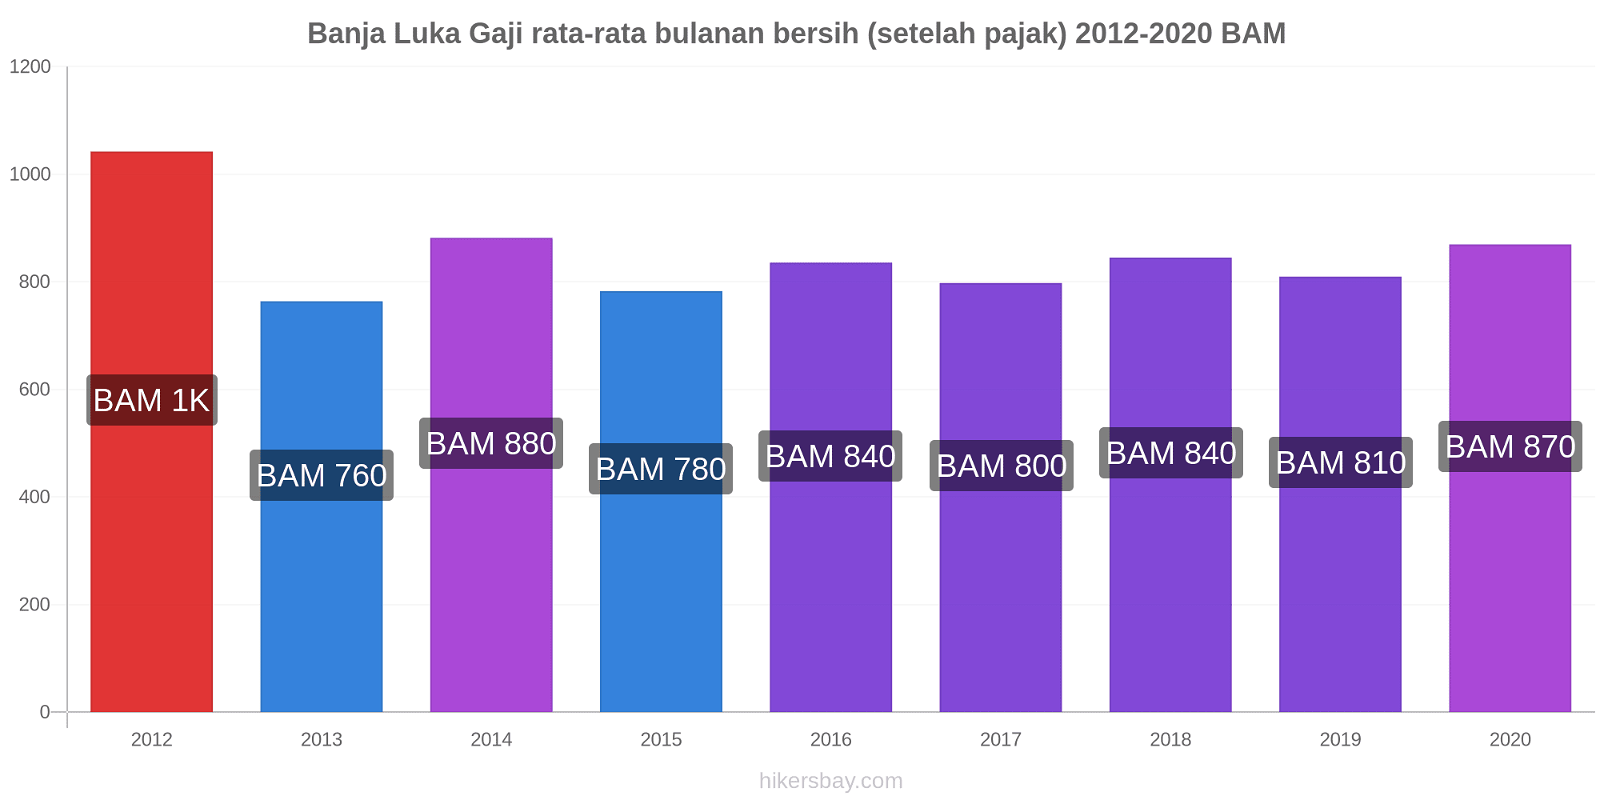 Banja Luka perubahan harga Gaji rata-rata bulanan bersih (setelah pajak) hikersbay.com